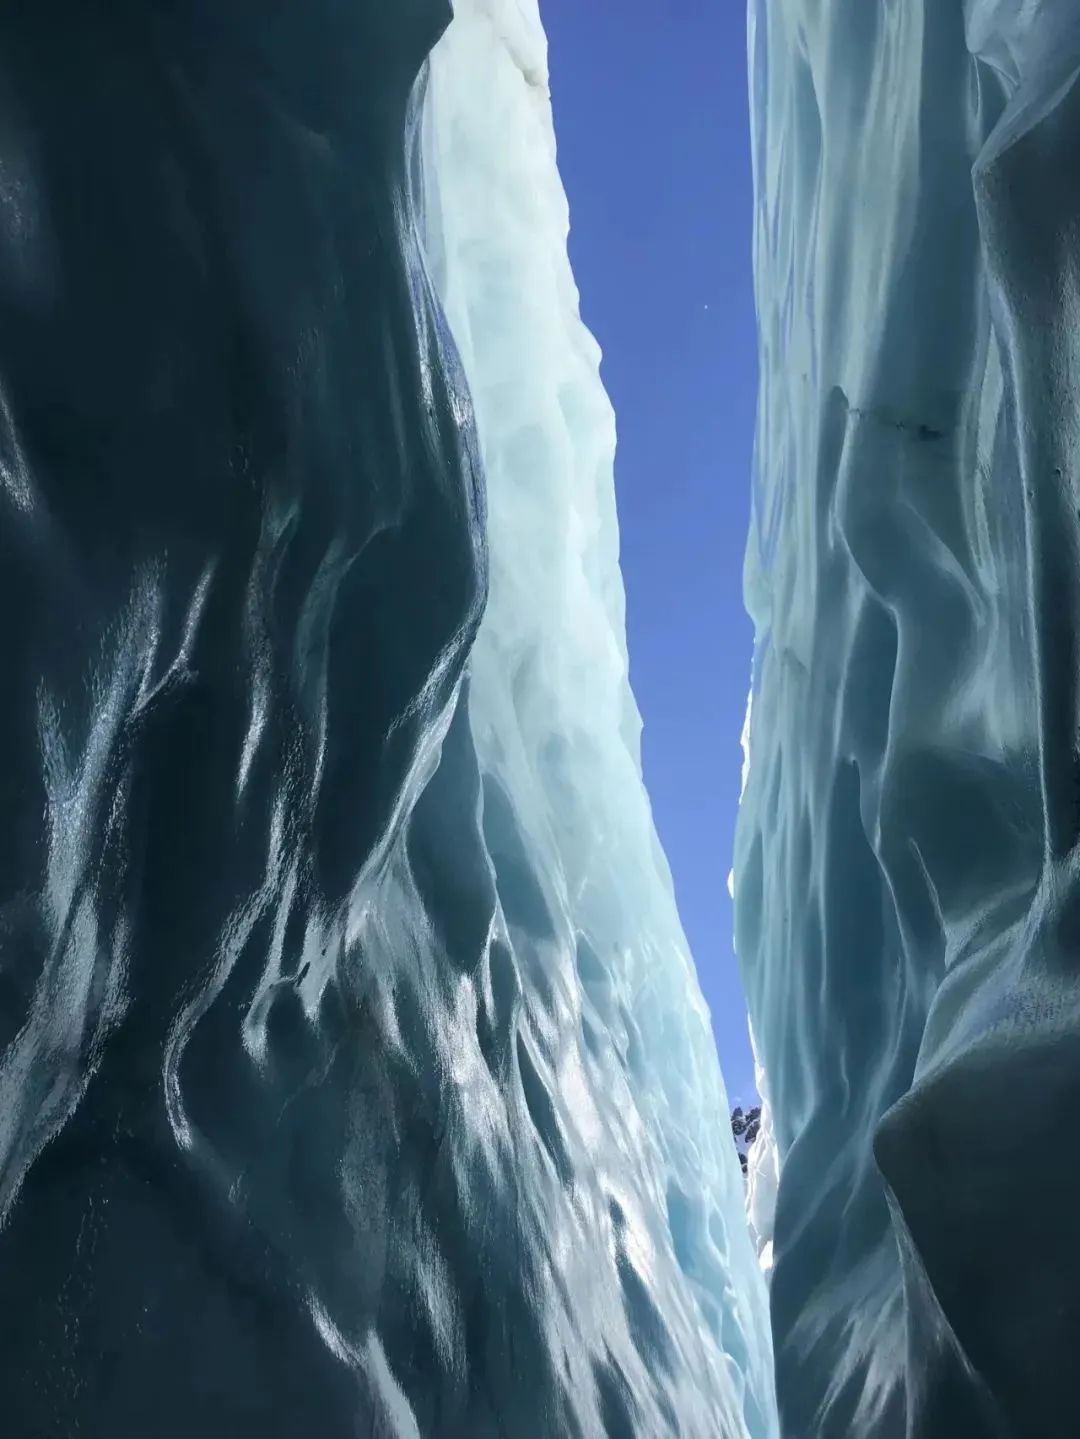 新西兰南岛冰川徒步背后的故事